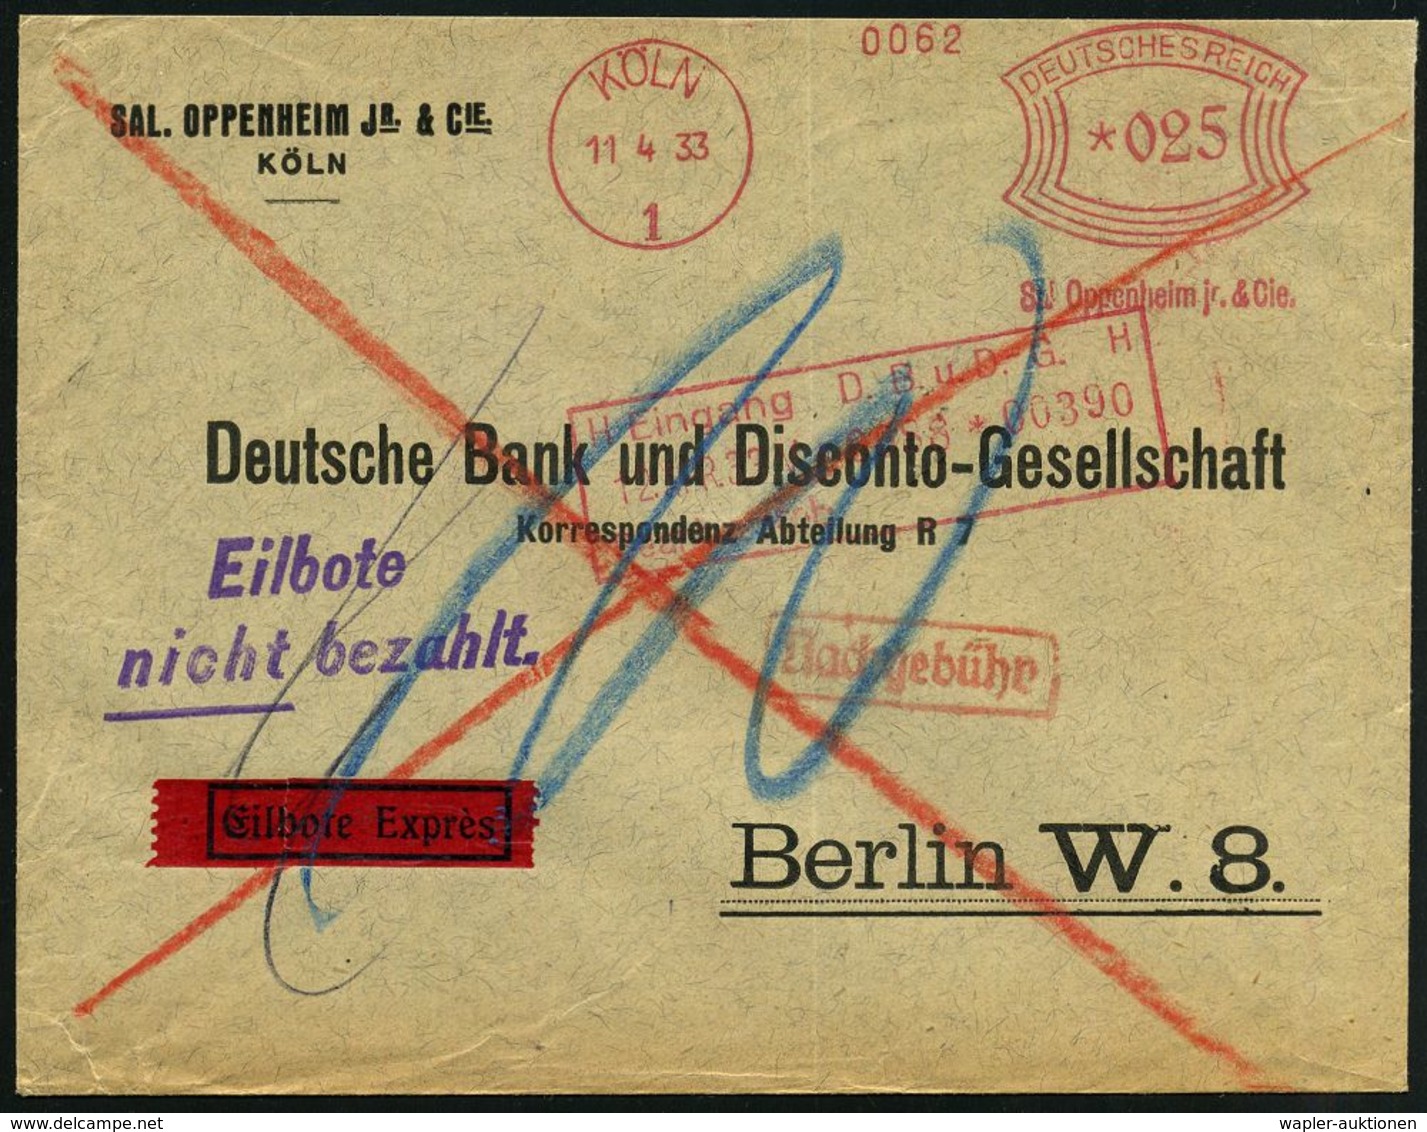 JUDAICA / JÜDISCHE GESCHICHTE / ZIONISMUS : KÖLN/ 1/ Sal.Oppenheim Jr. & Cie. 1933 (11.4.) AFS 025 Pf. = Deutsch-jüdisch - Jewish